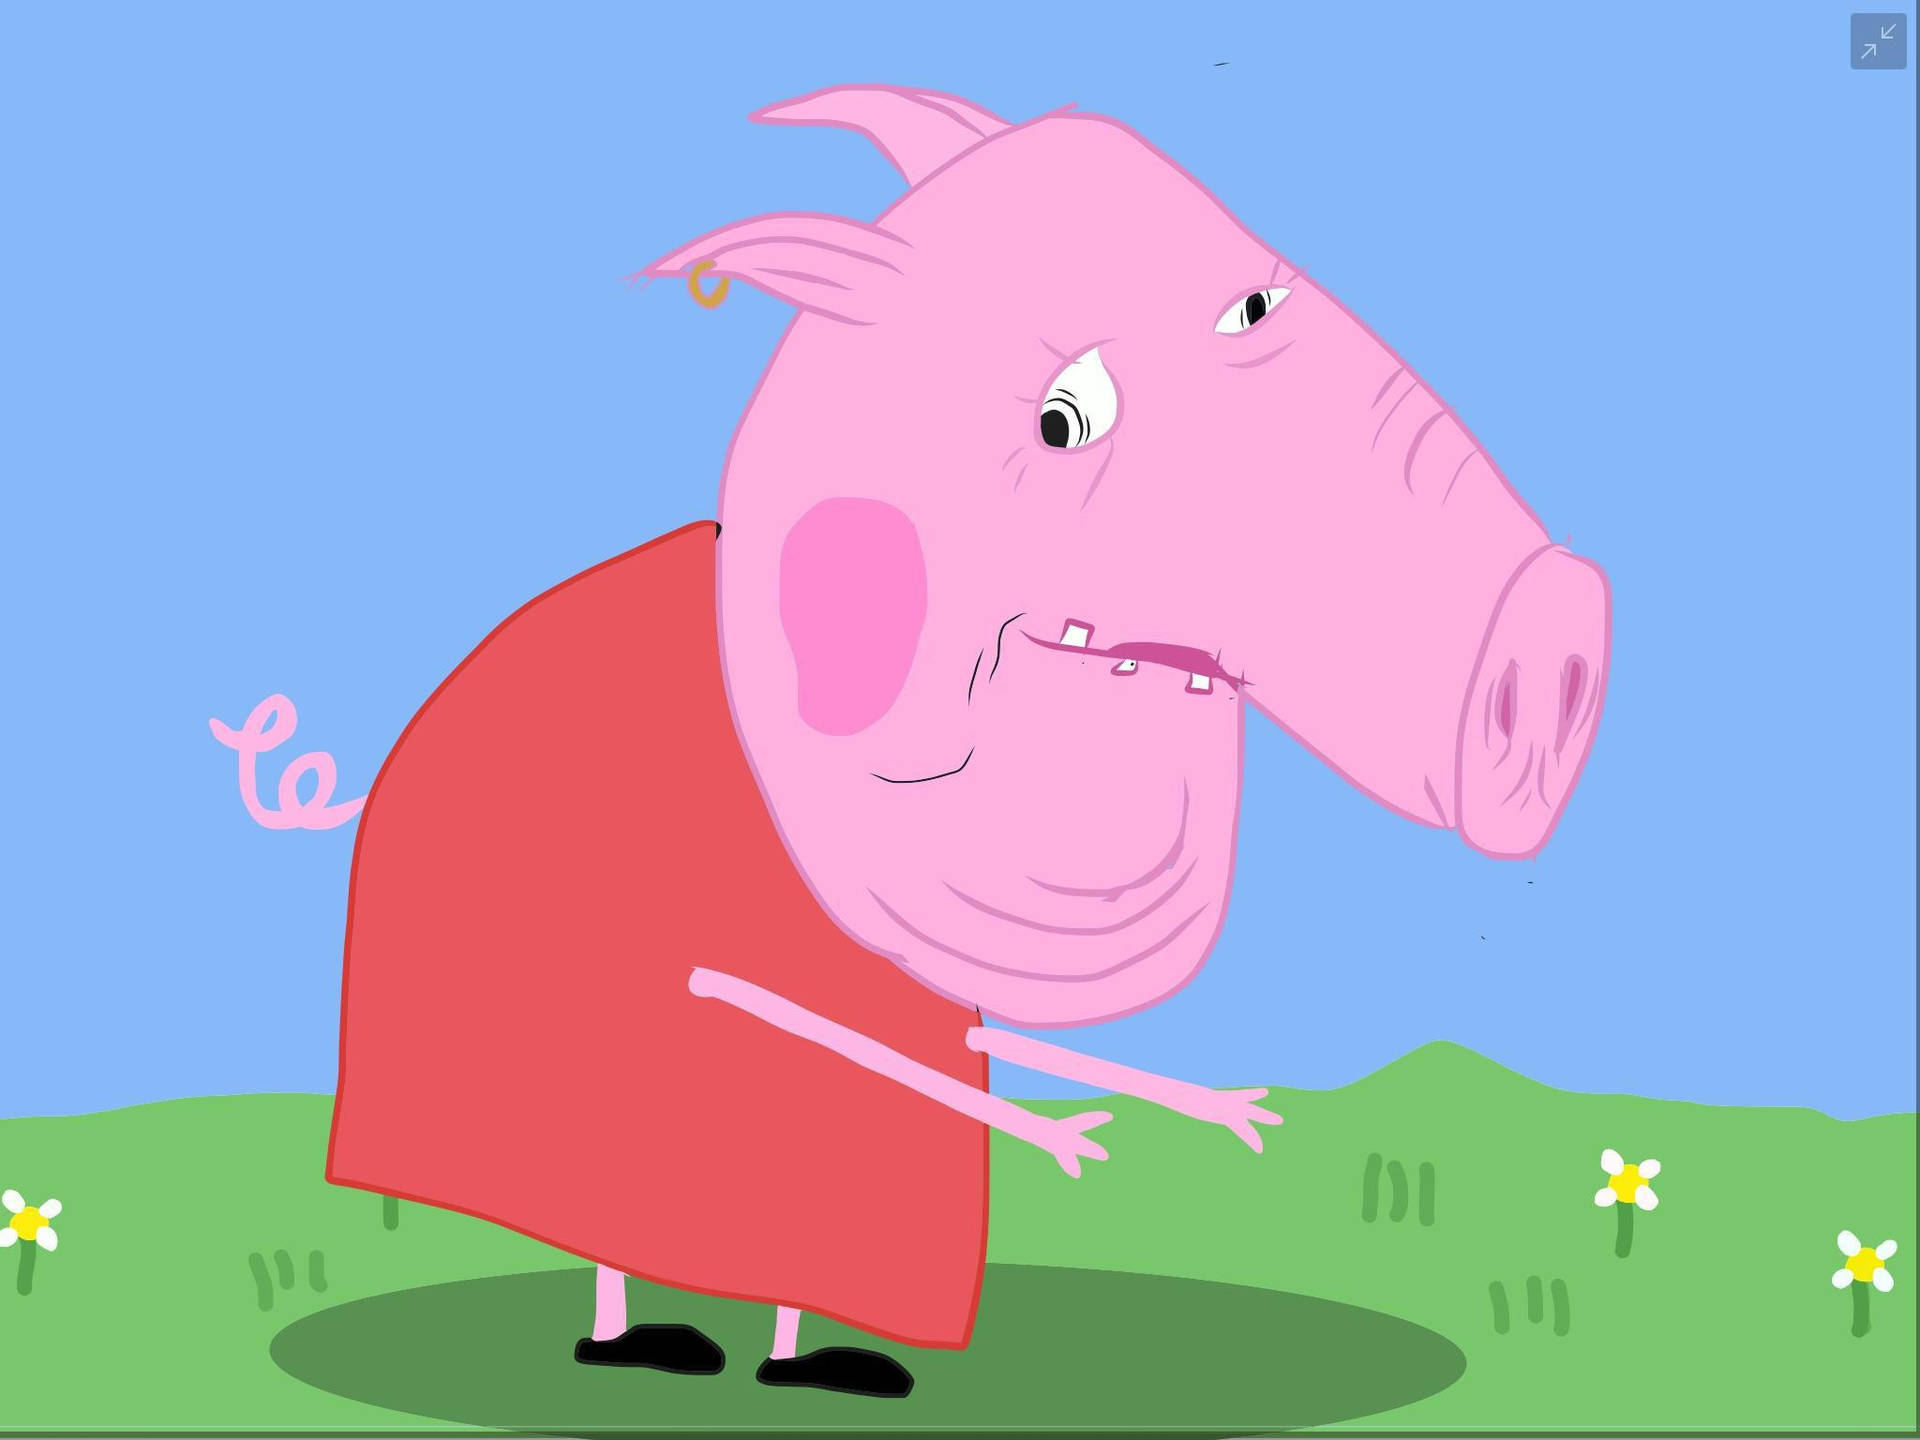 Forbøjet Over Peppa Pig Meme Wallpaper